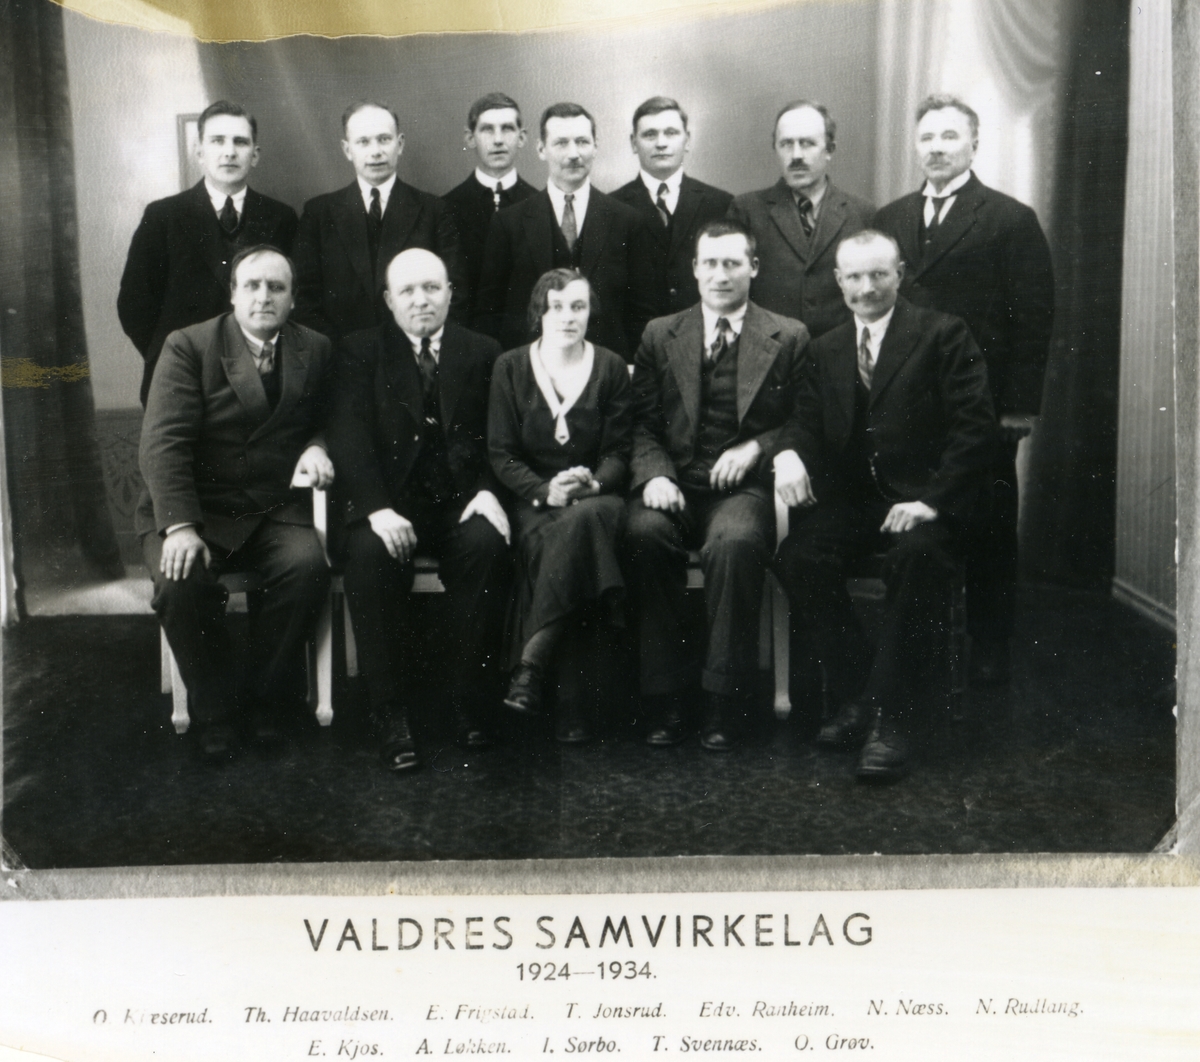 Styret i Valdres Samvirkelag 1924-1934, elleve menn og ei kvinne